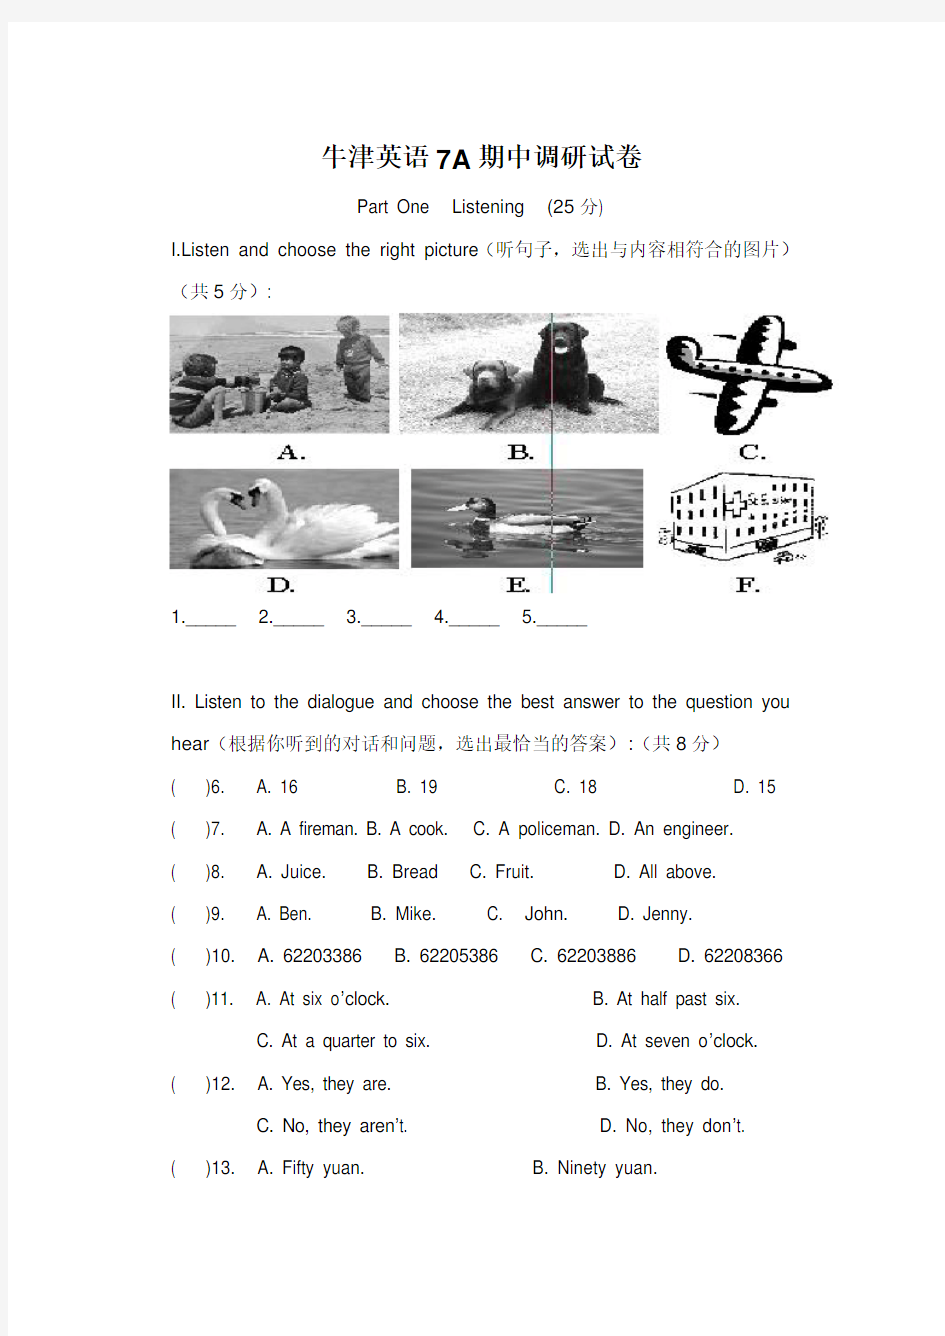 上海版牛津英语7A期中试卷答题纸及听力文字和答案复习过程